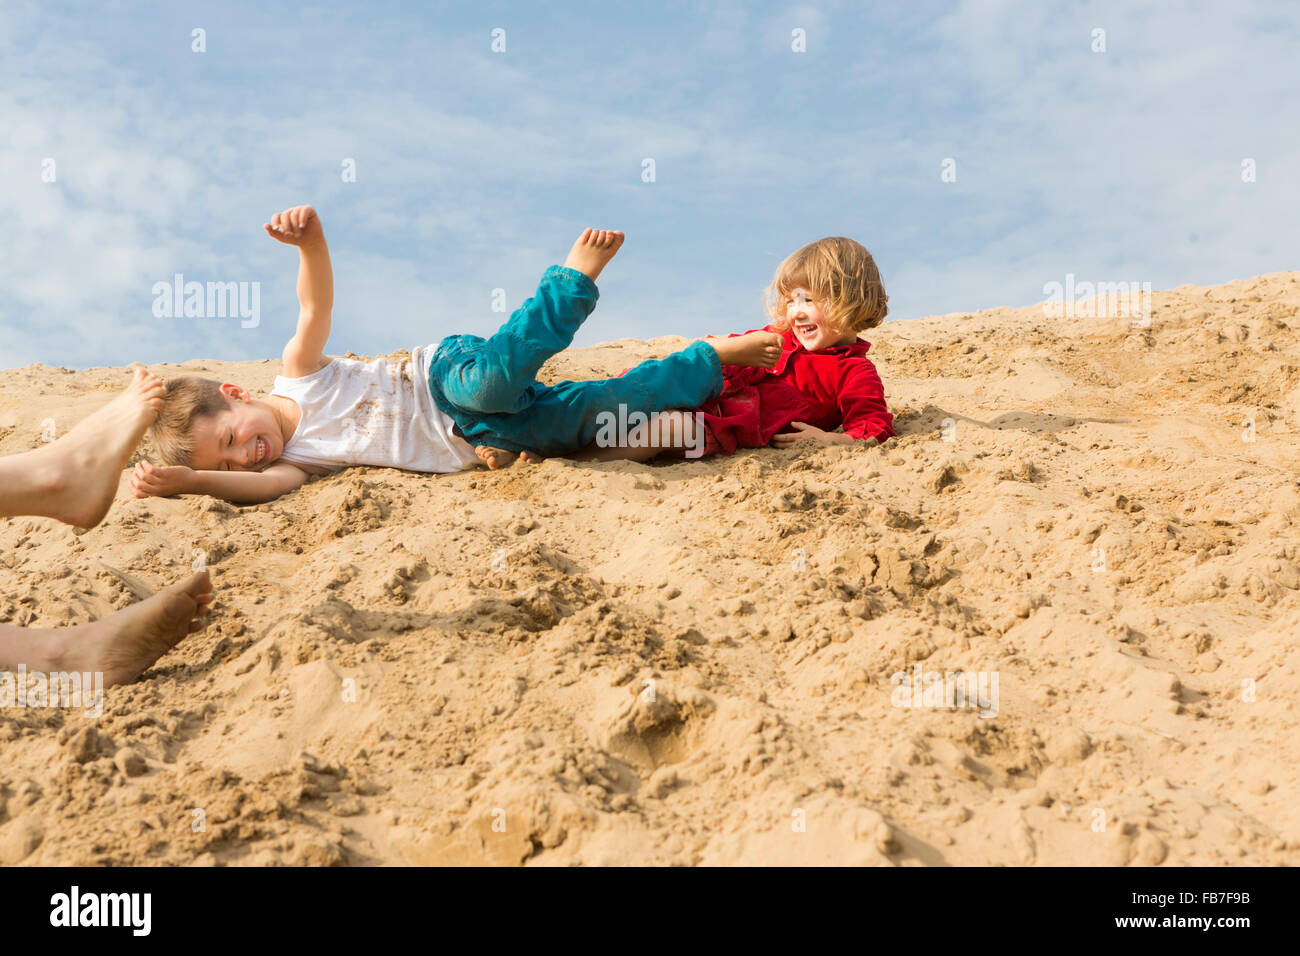 Siblings enjoying on sand dune against sky Stock Photo